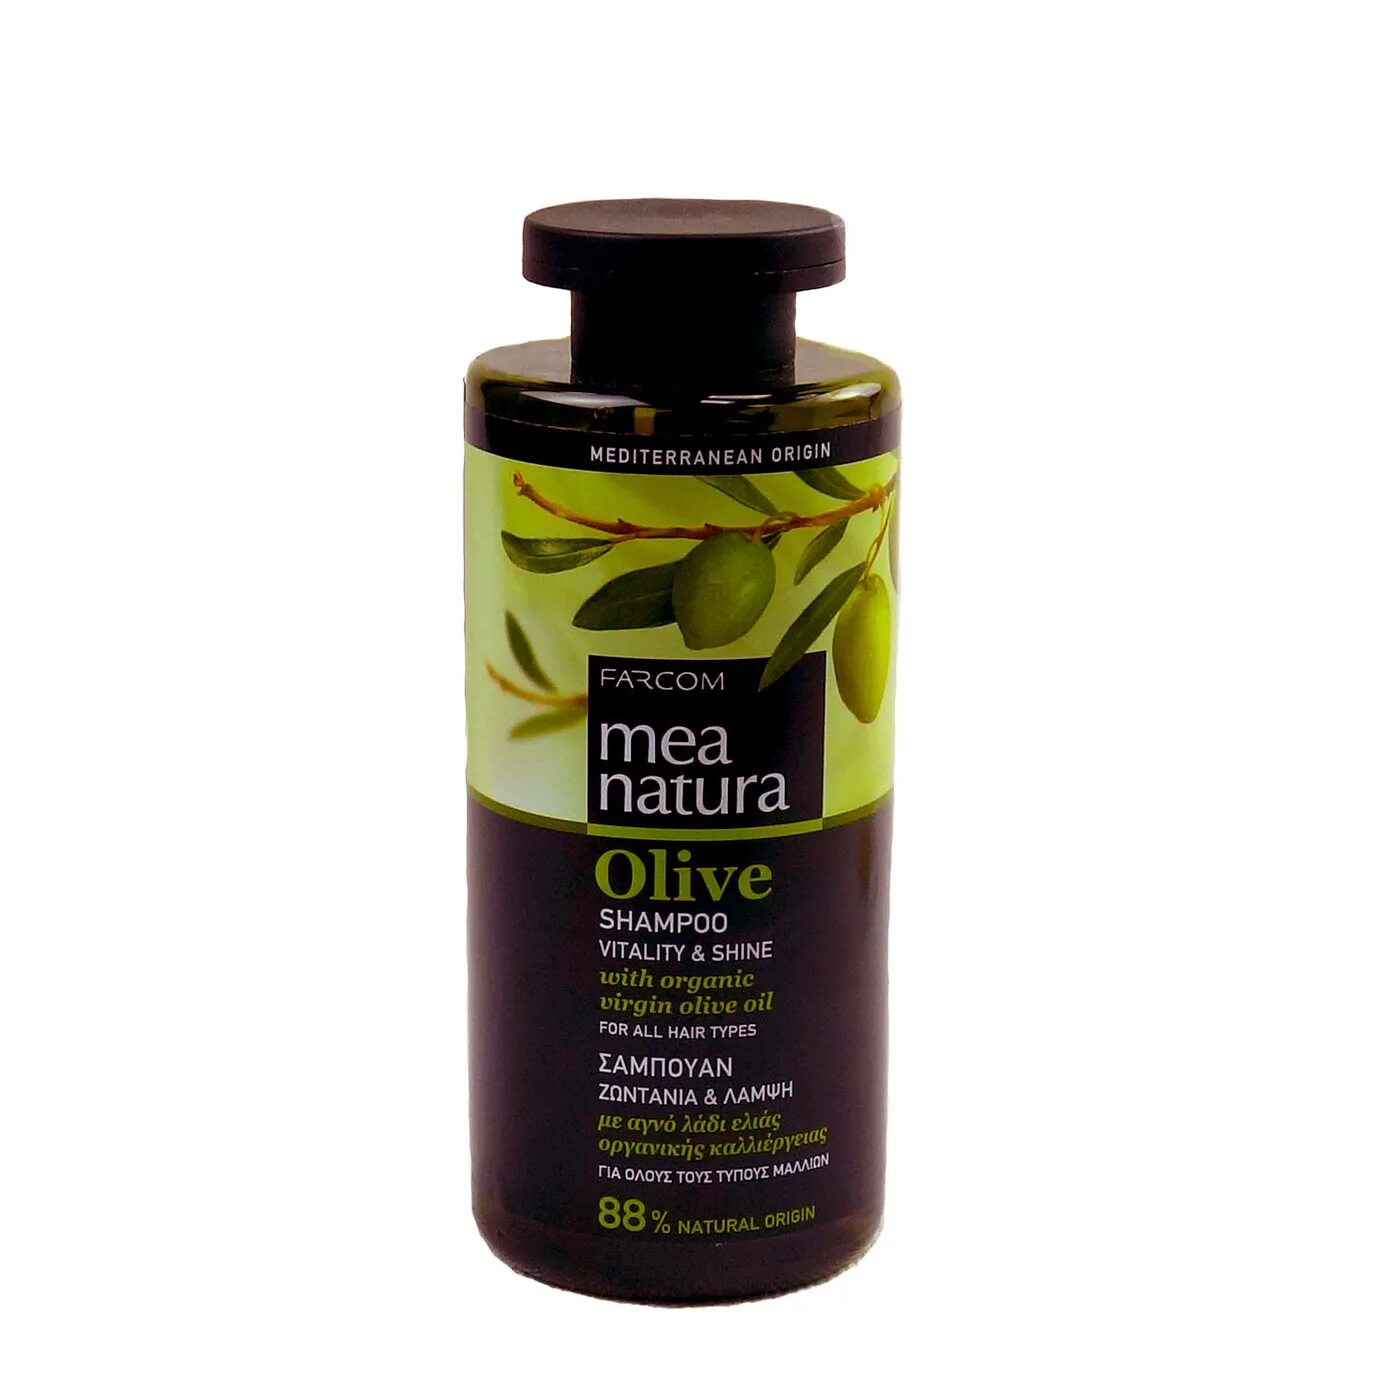 Mea Natura Olive шампунь. Шампунь для всех типов волос FARCOM Mea Natura Olive Vitality & Shine, 300мл. FARCOM шампунь для всех типов волос олива. FARCOM шампунь для сух и безжизн волос олива 300.